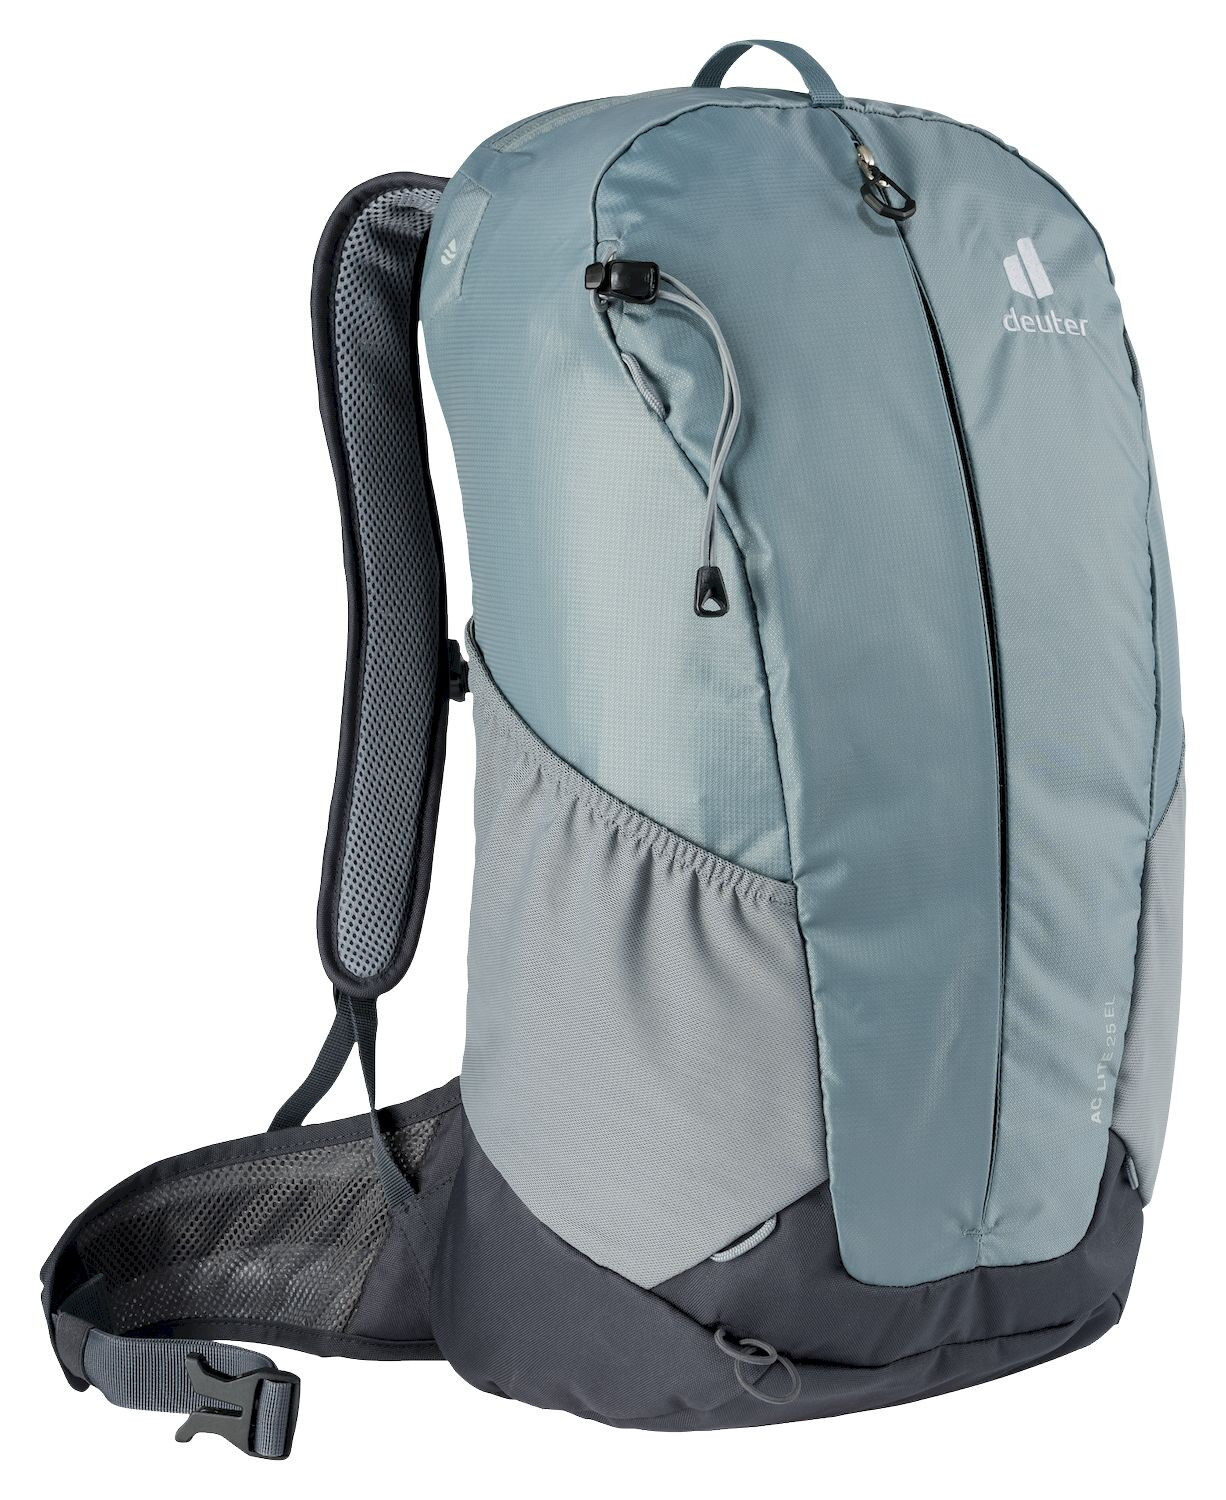 Deuter AC Lite 25 EL - Walking backpack - Men's